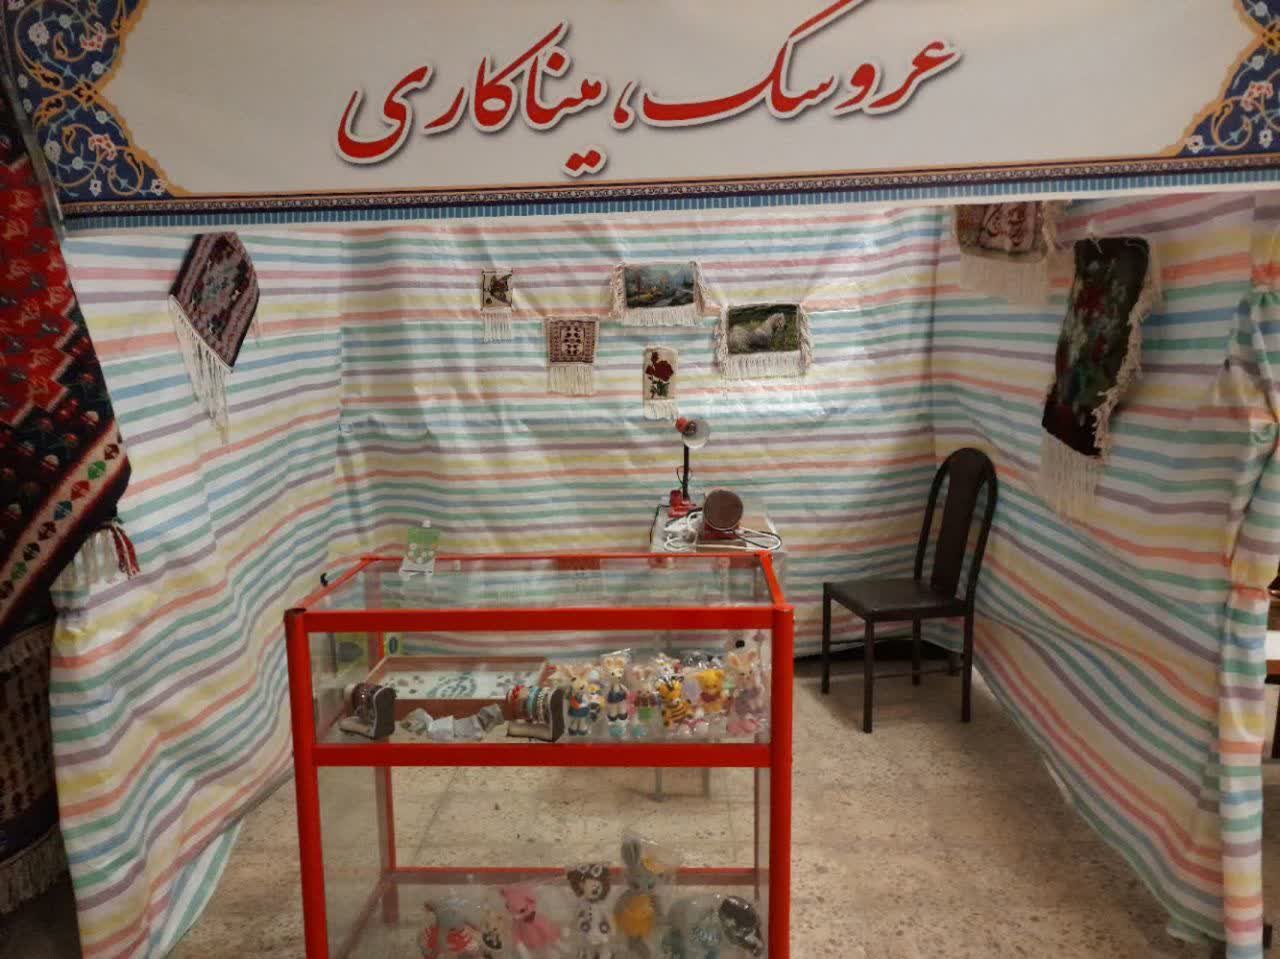 نمایشگاه صنایع دستی بسیج هنرمندان در کرمانشاه برپا شد